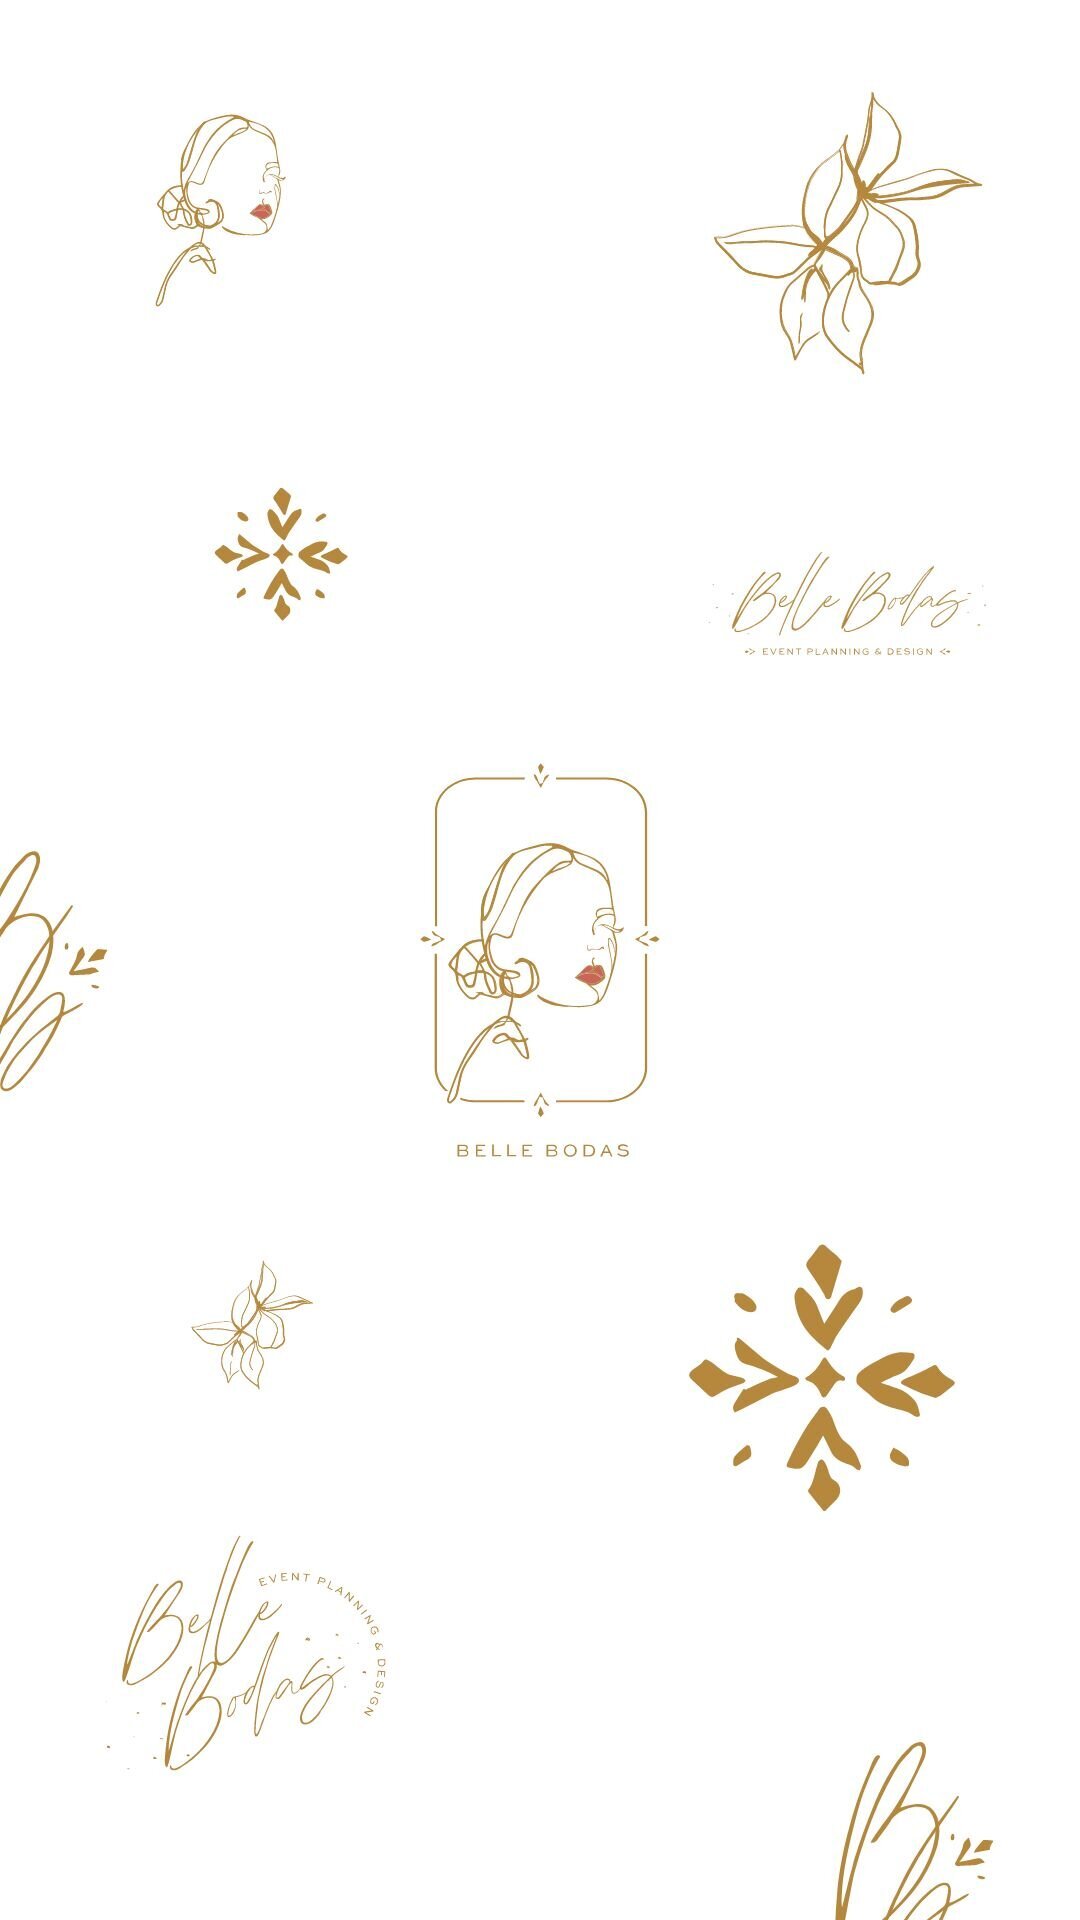 Foil & Ink branding & web design for Belle bodas events (4)